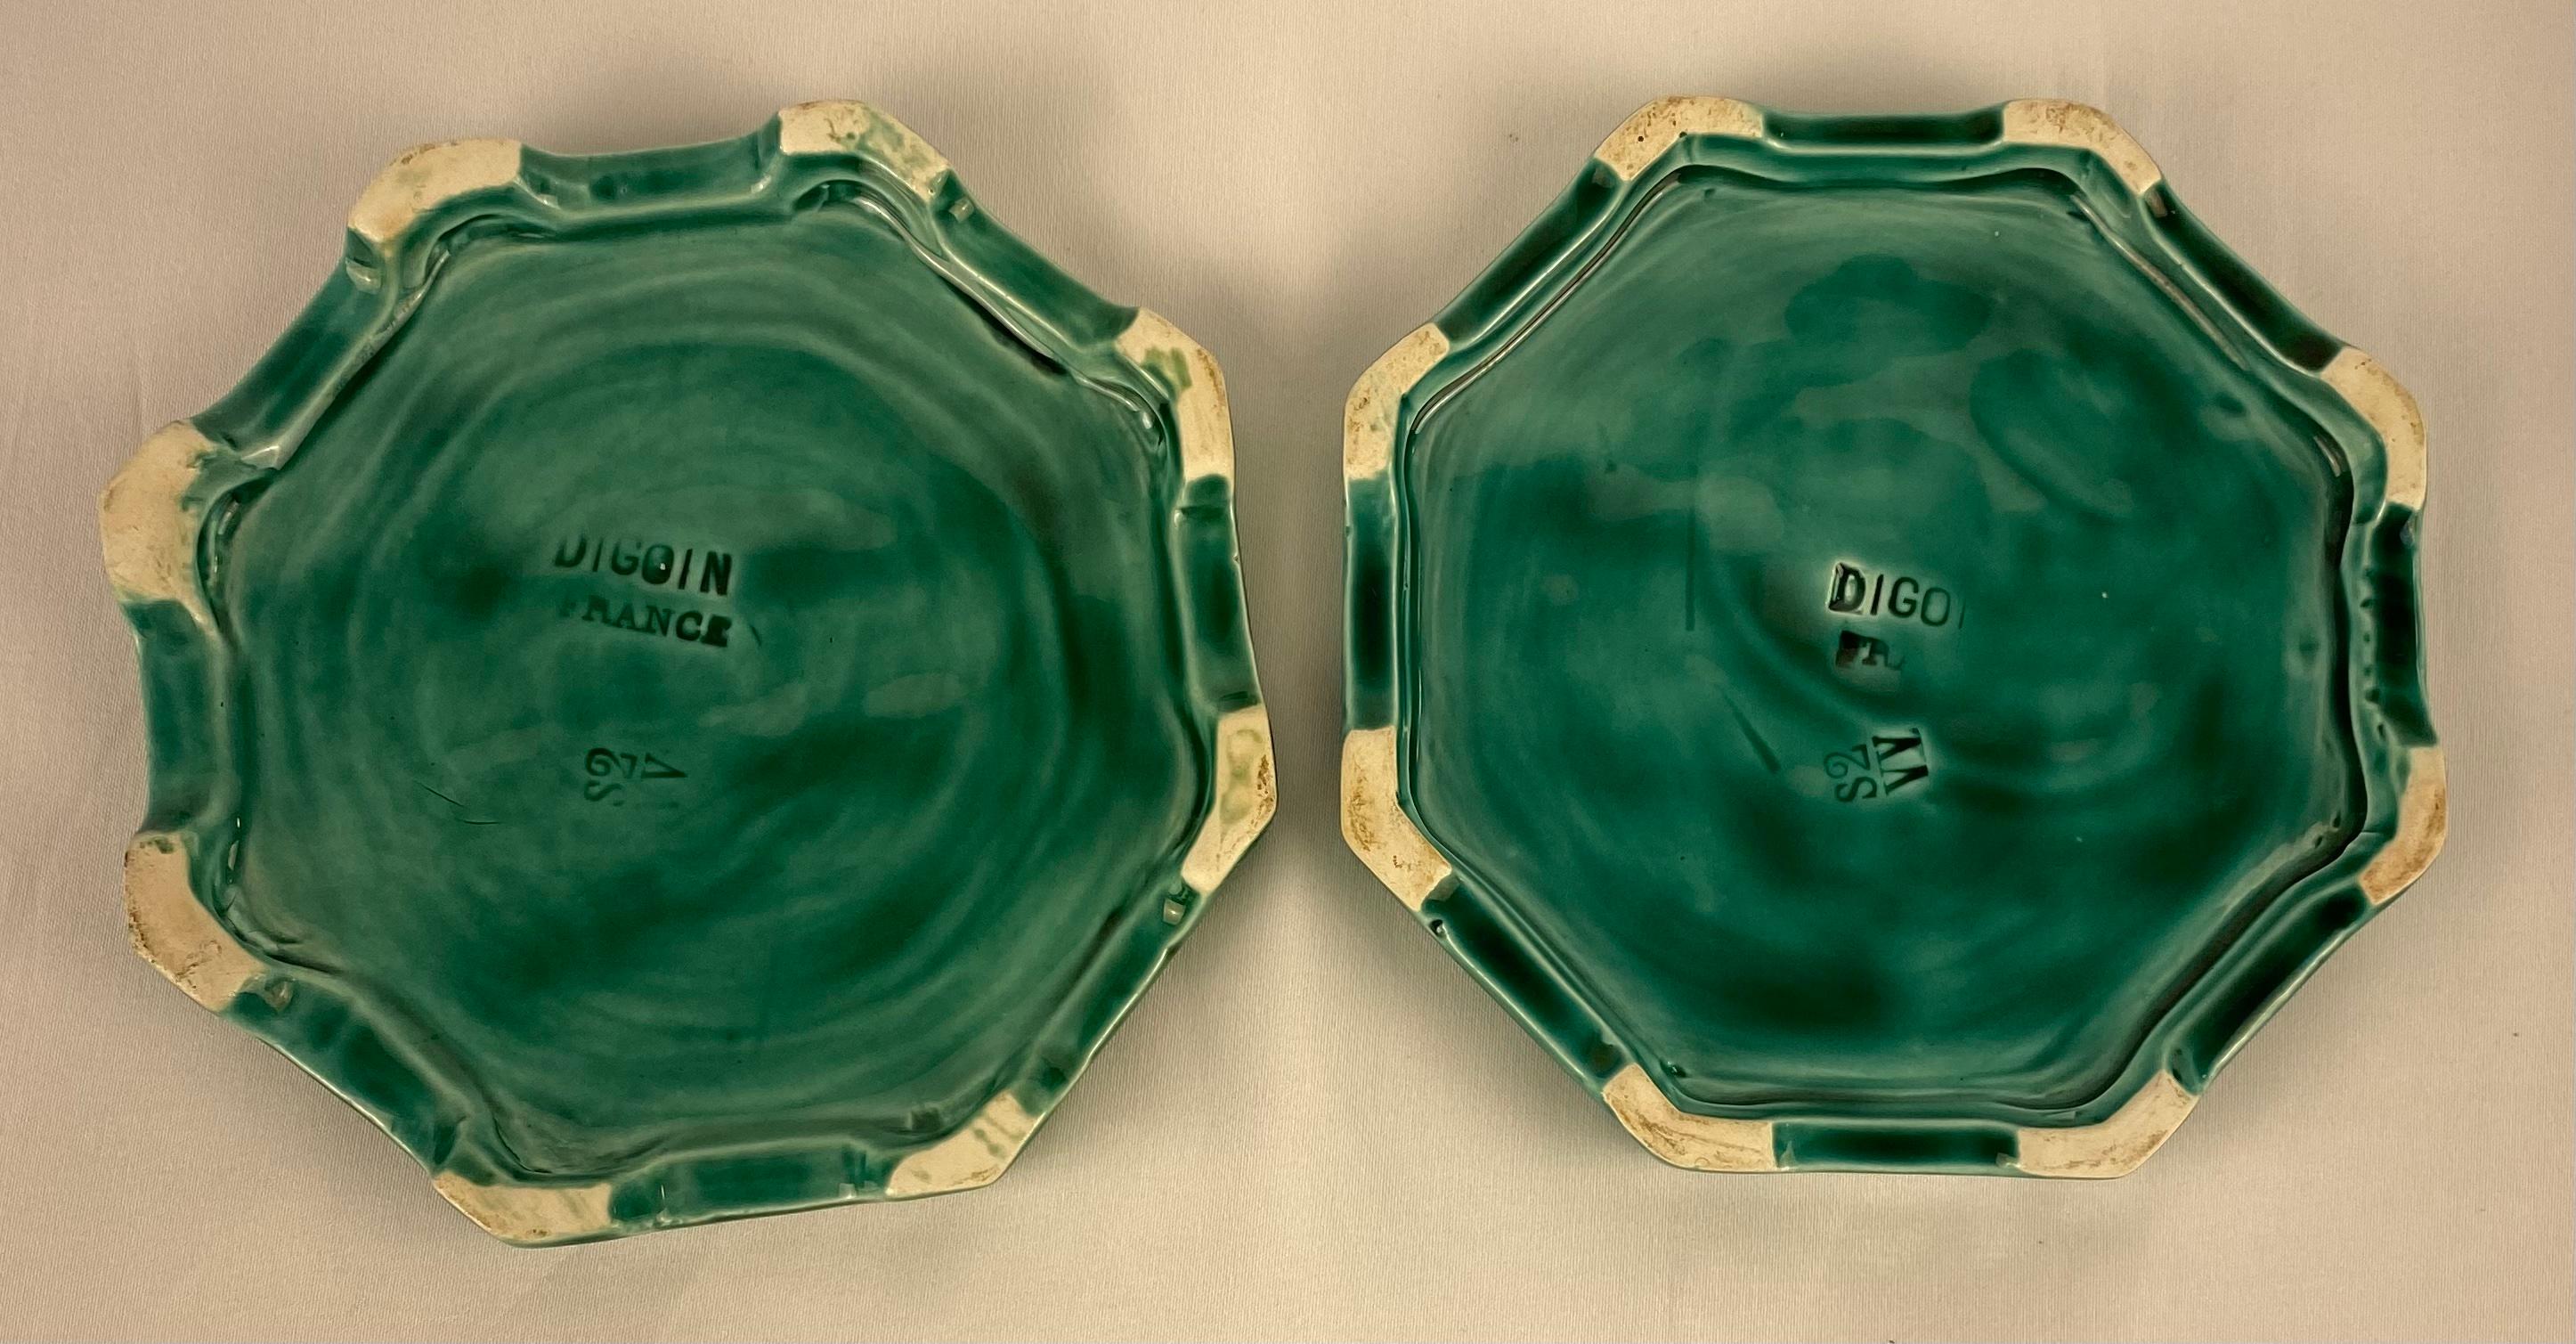 Ein hochwertiges französisches Keramikset von Digoin Sarreguemines, Frankreich, ca. 1950er Jahre. 

Das Set besteht aus einem großen Teller oder einer Schale und zwei großzügigen Weinflaschenuntersetzern zum Schutz Ihrer Tischwäsche. Die